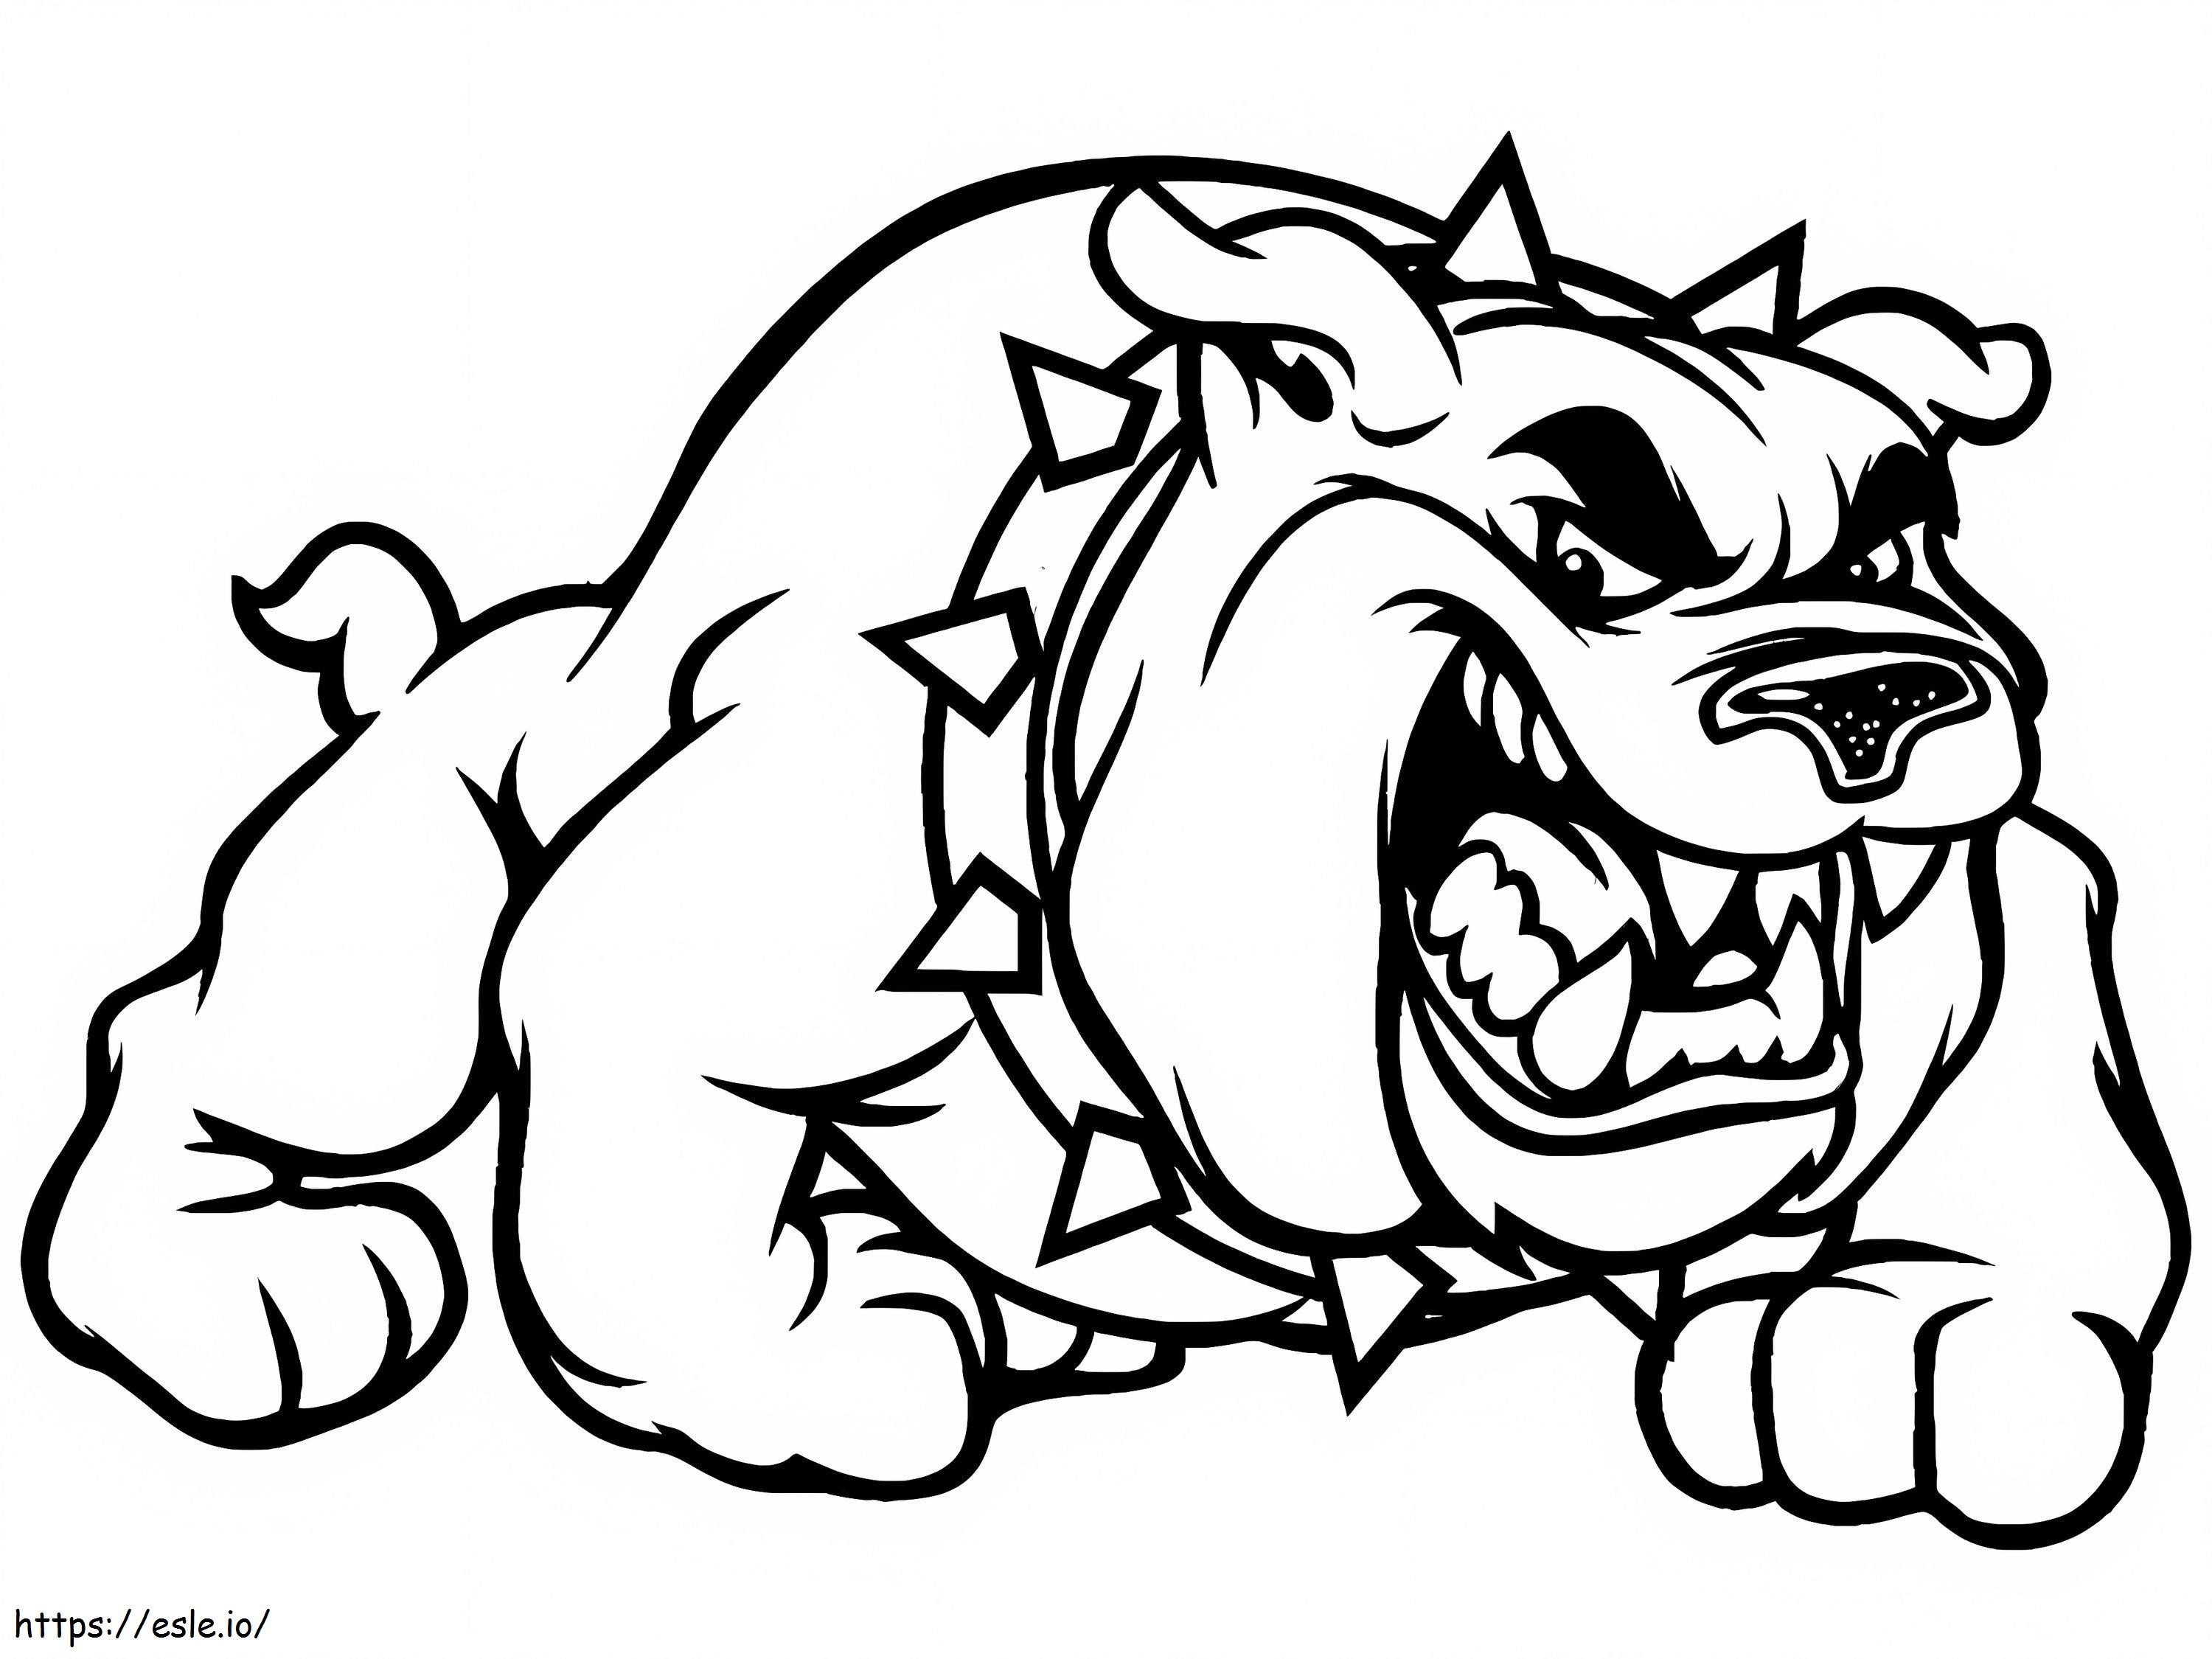 Angry Bulldog coloring page